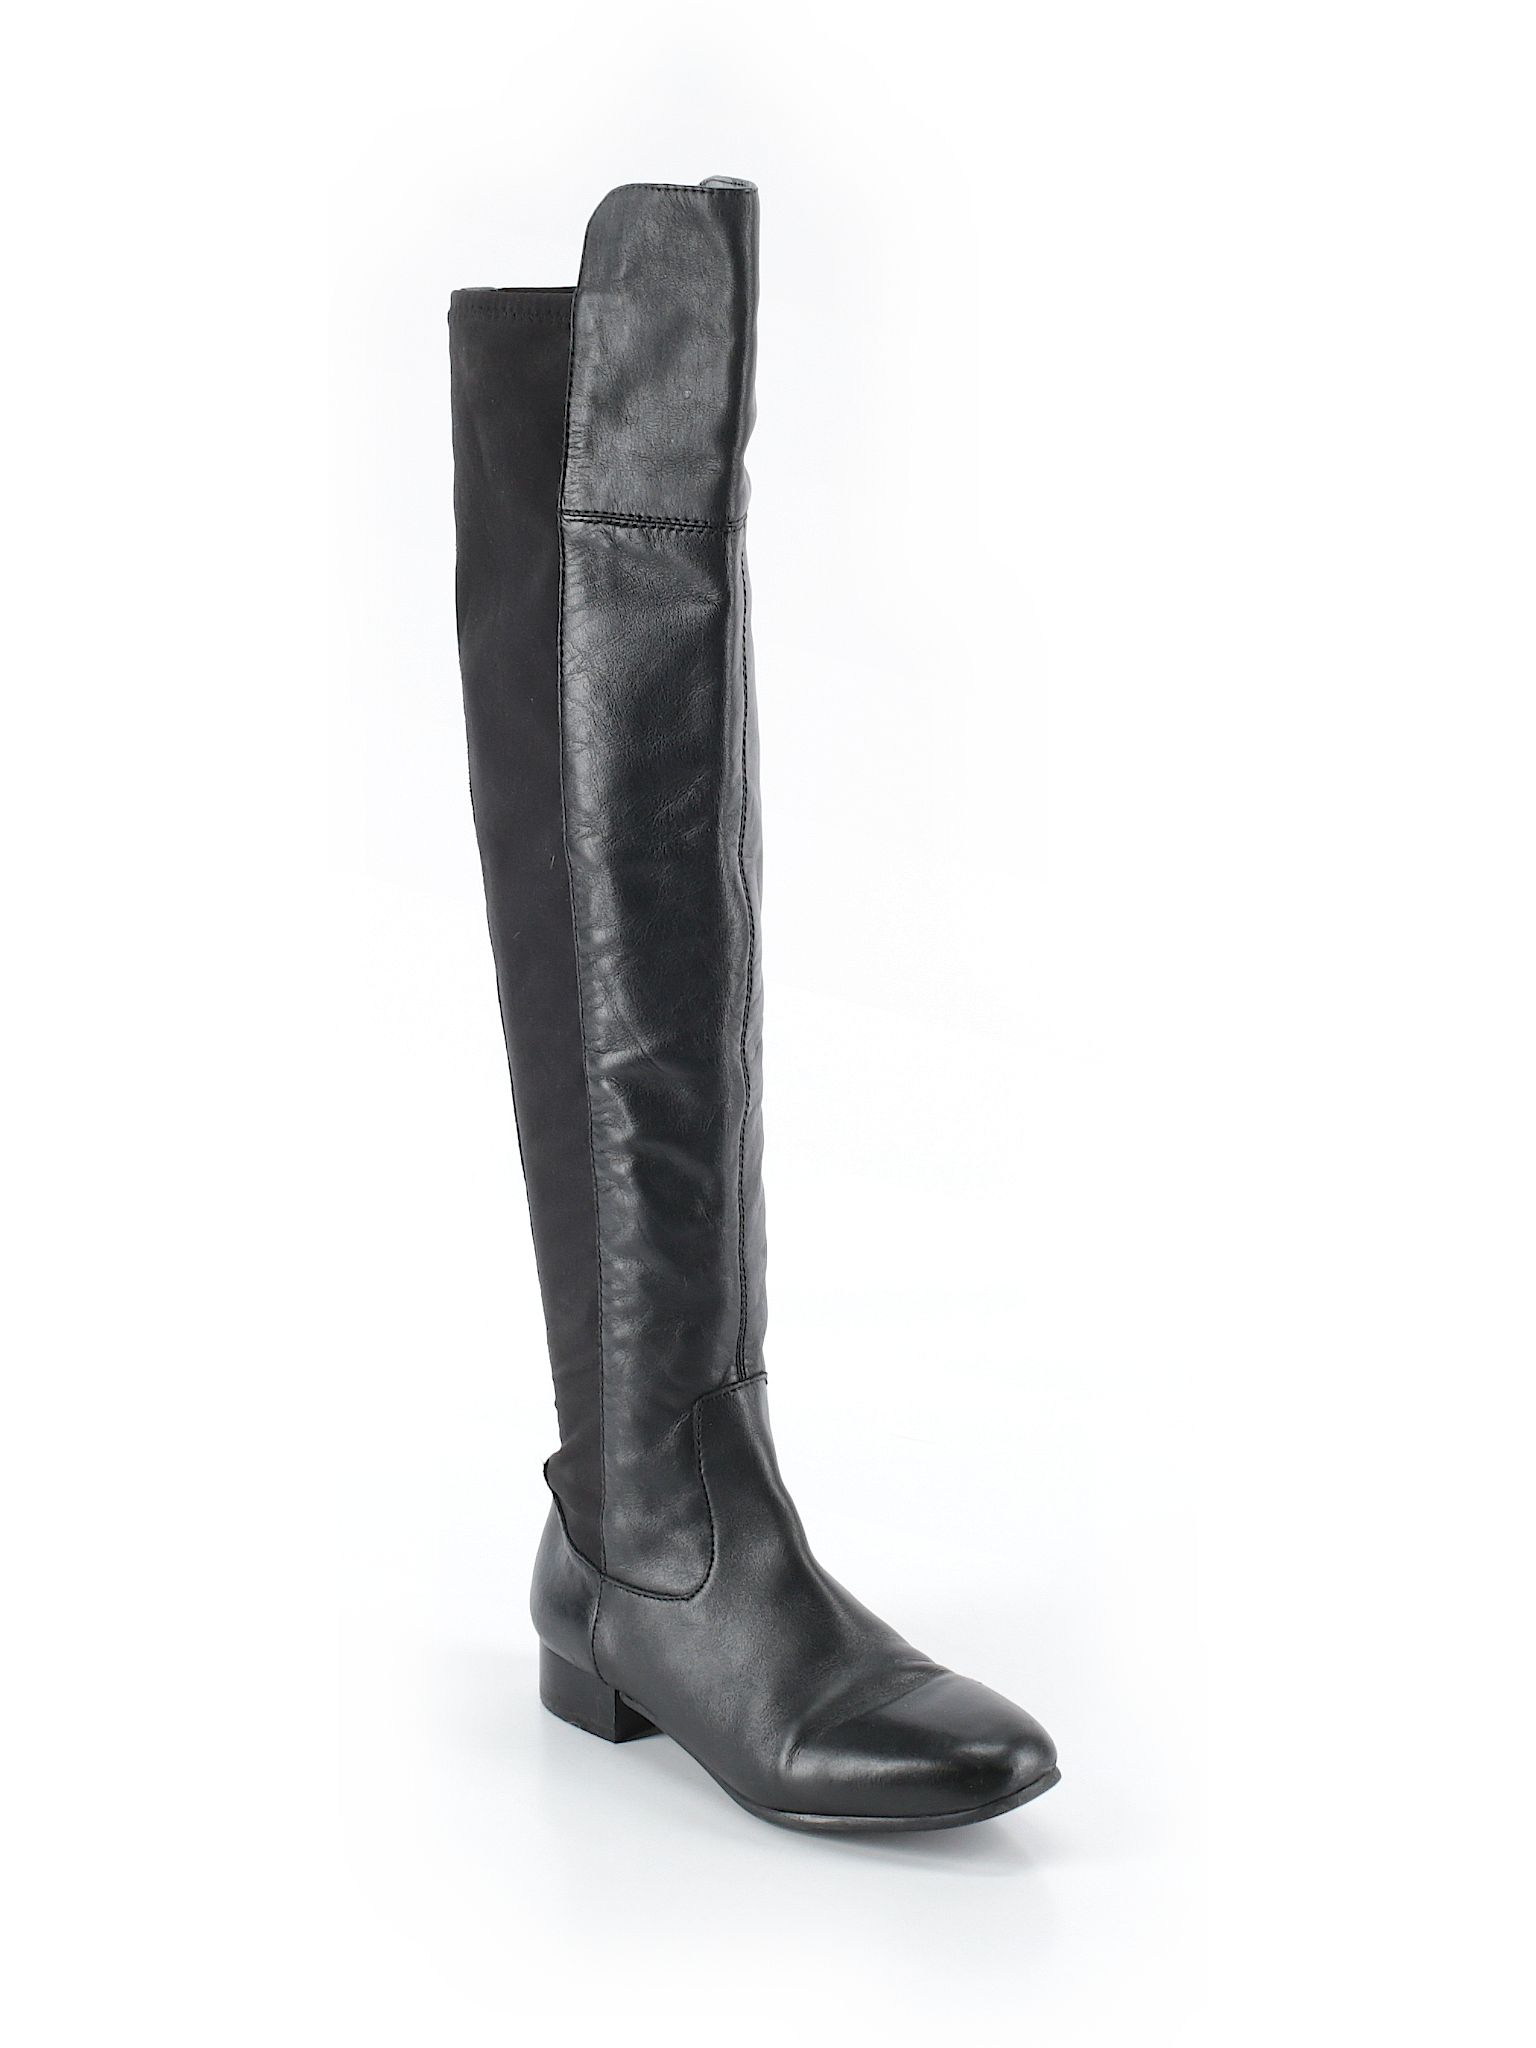 Louise Et Cie Boots Size 4: Black Women's Clothing - 35645693 | thredUP